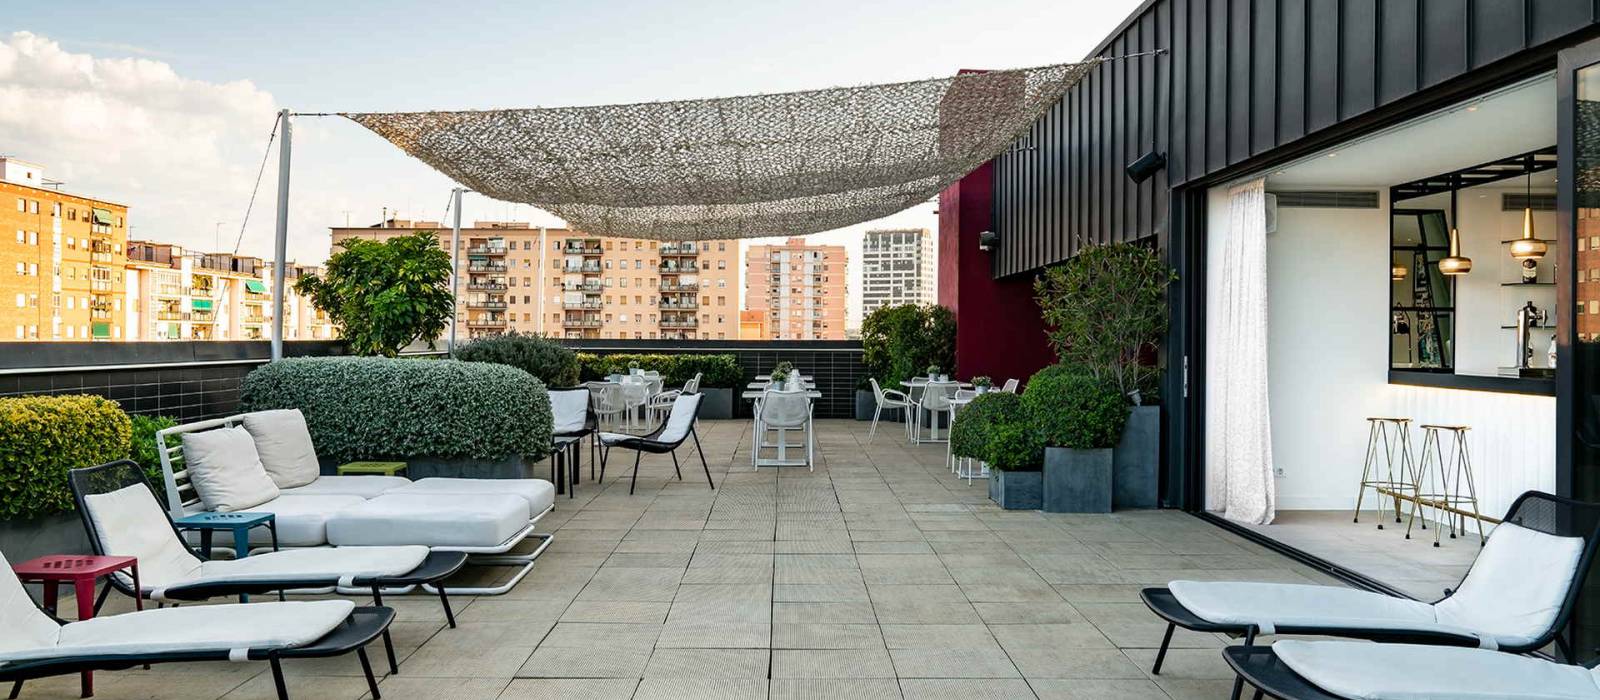 Servicios Hotel Barcelona Bit - Vincci Hoteles - Mini piscina